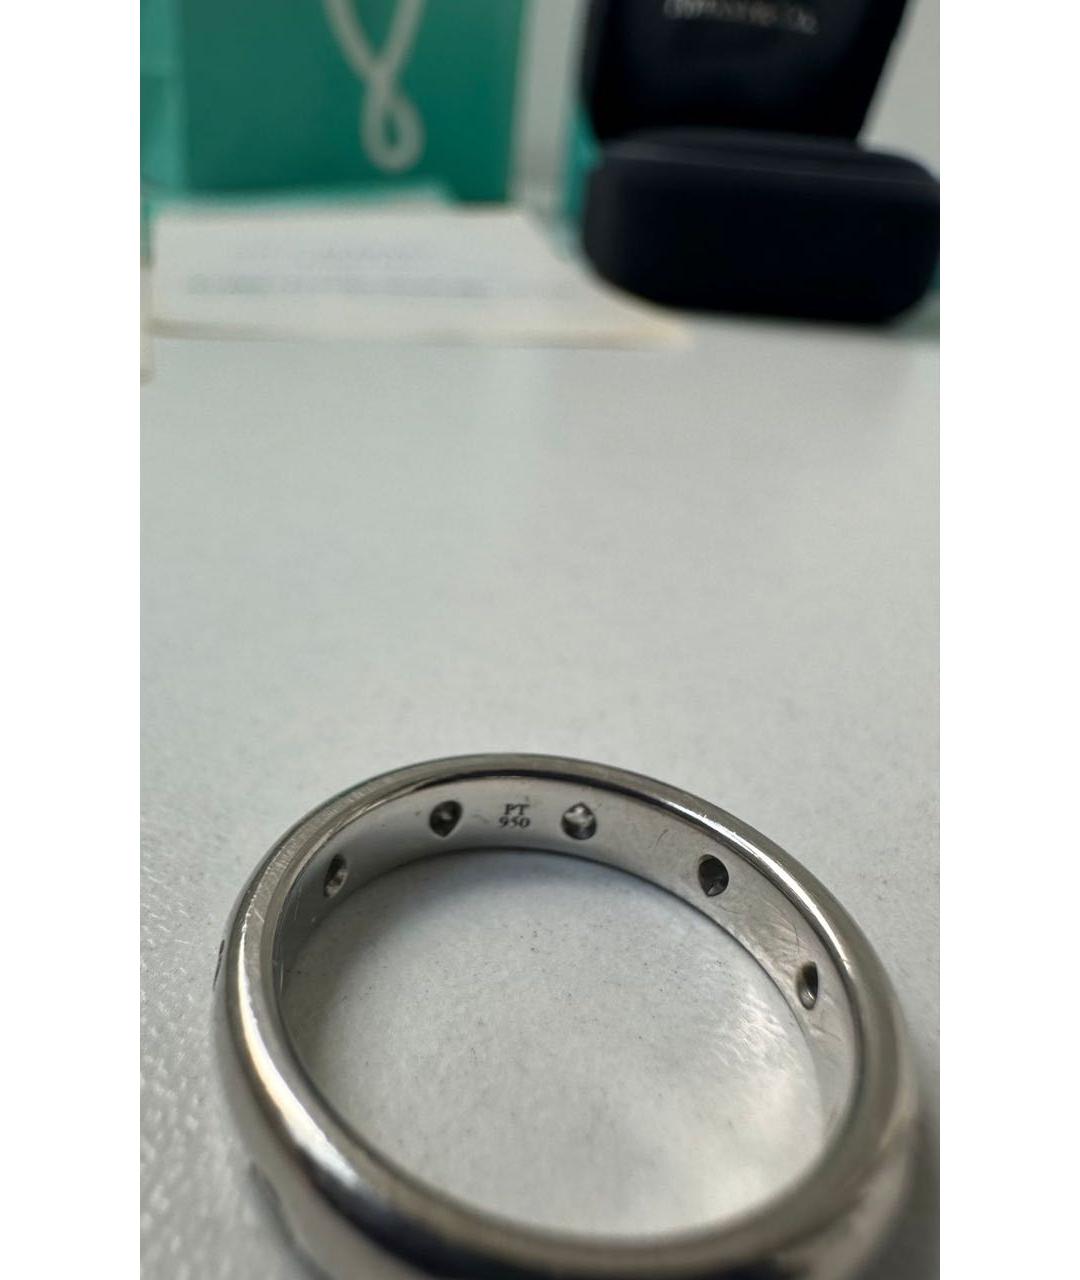 TIFFANY&CO Серебряное платиновое кольцо, фото 3